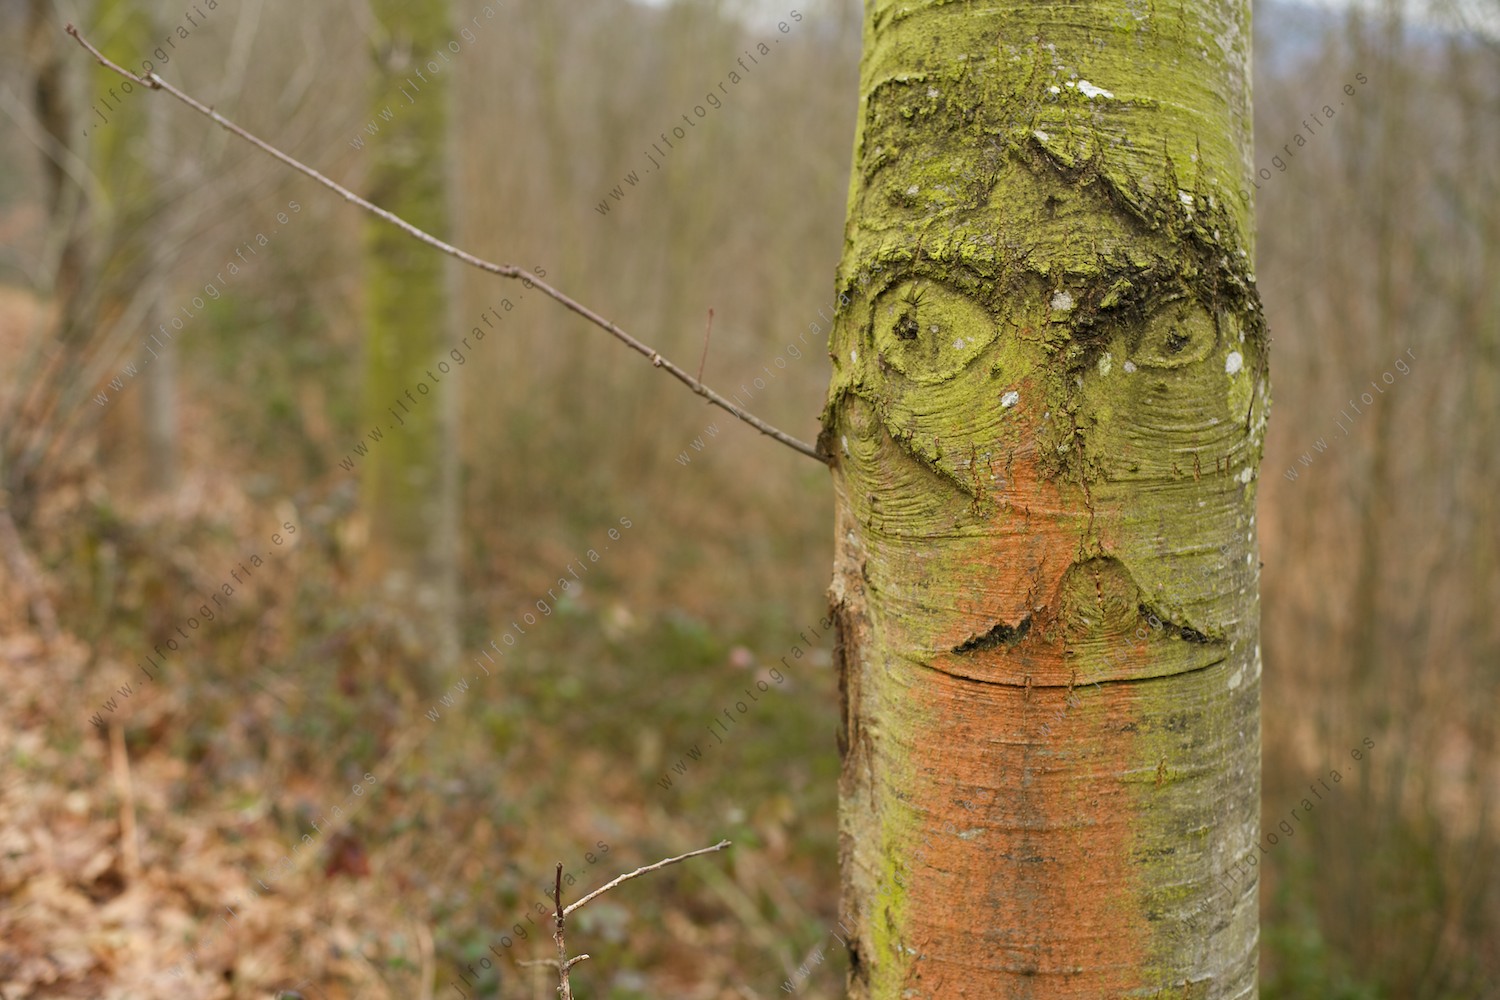 Un tronco con unas curiosas formaciones que le hacen parecer una cara.